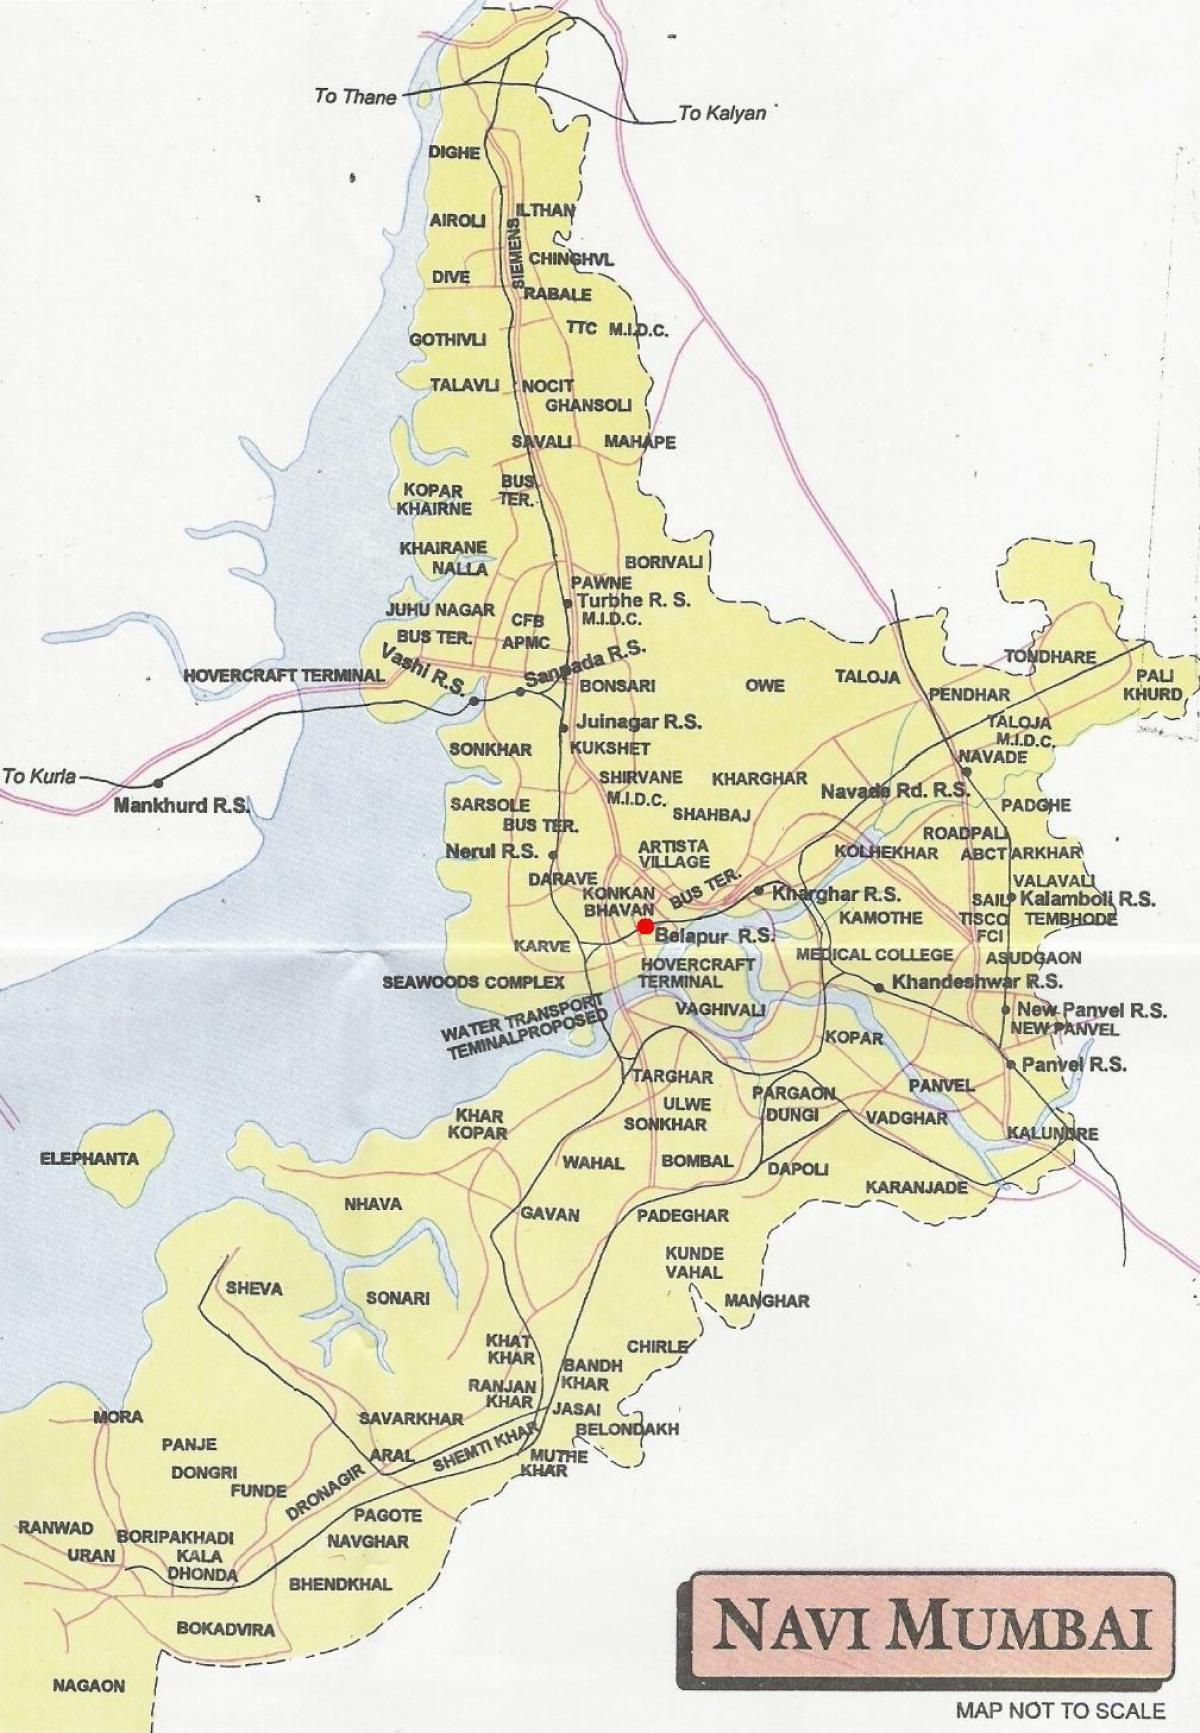 نوی ممبئی کا نقشہ